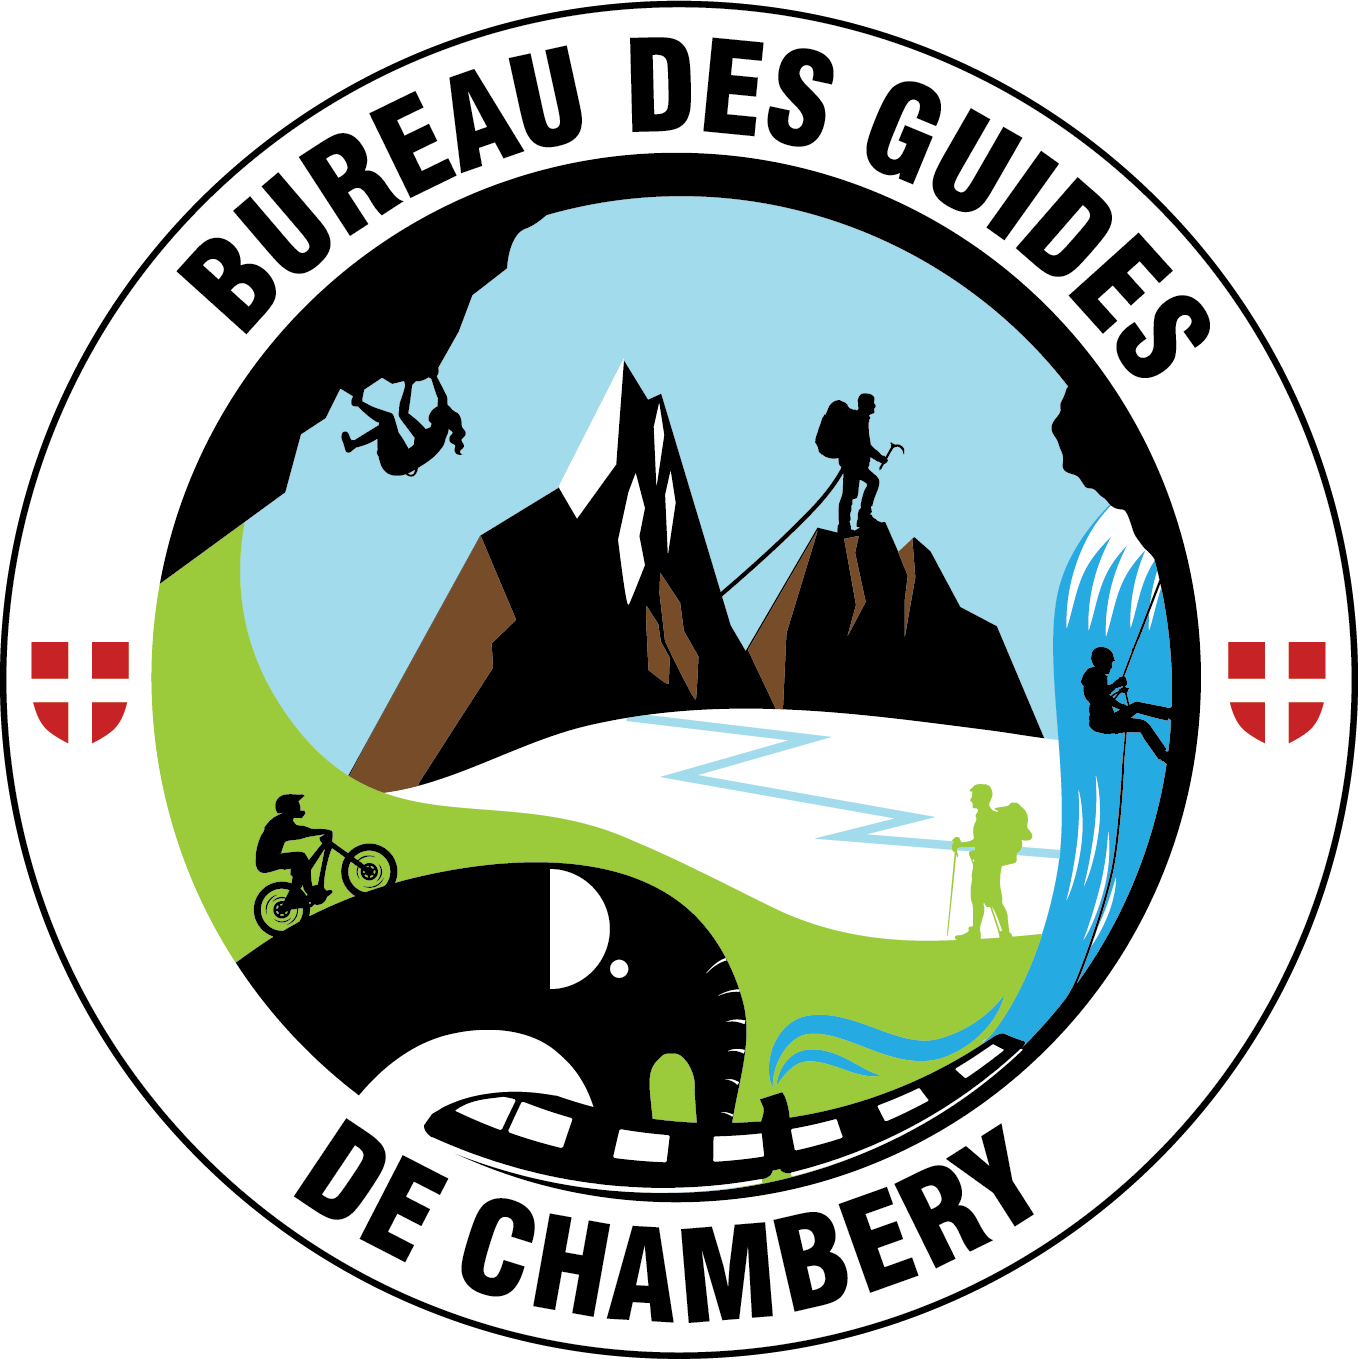 Bureau des guides de Chambéry